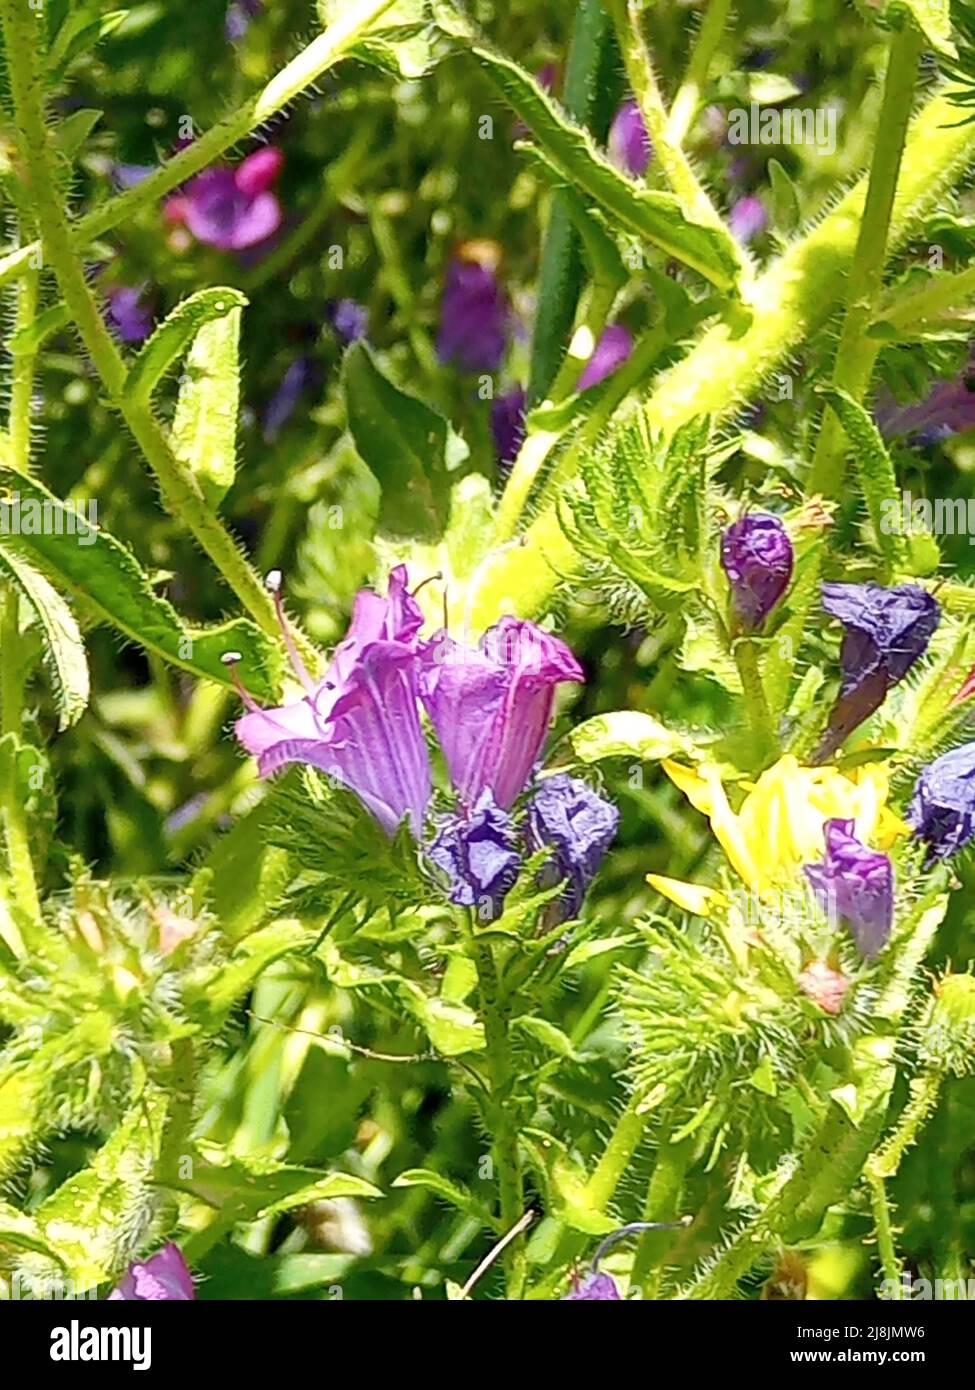 Wildflower of Viper's-Buglosses - Genus Echium Stock Photo